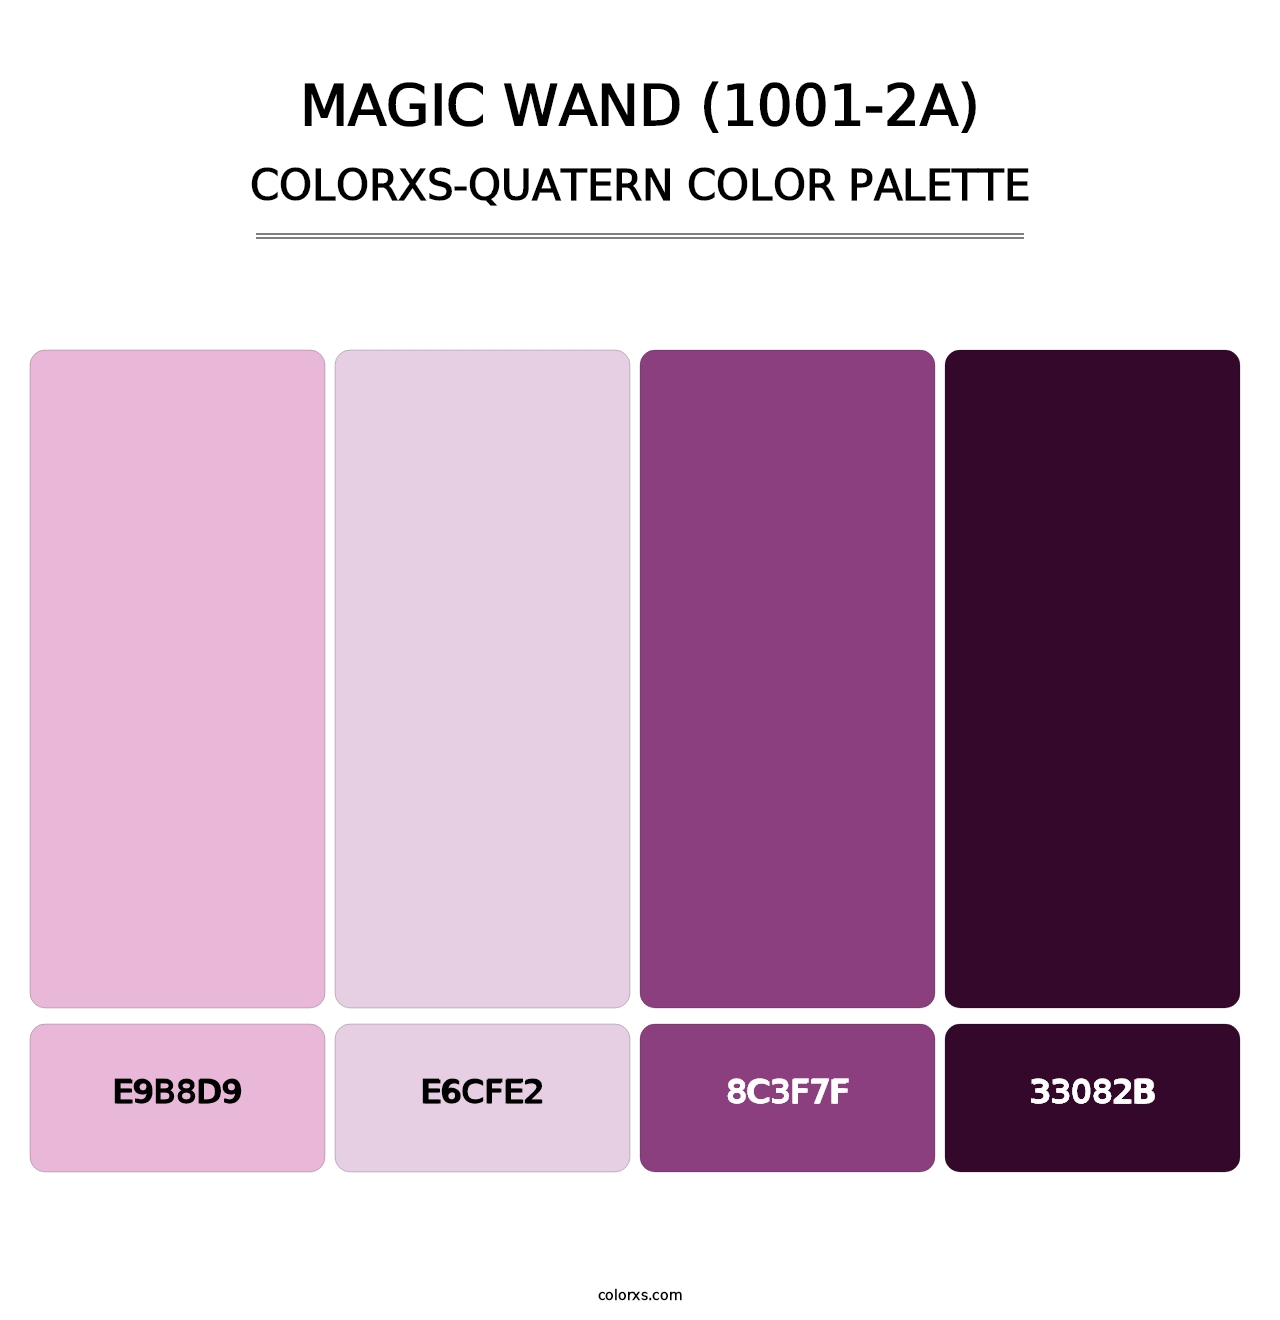 Magic Wand (1001-2A) - Colorxs Quatern Palette